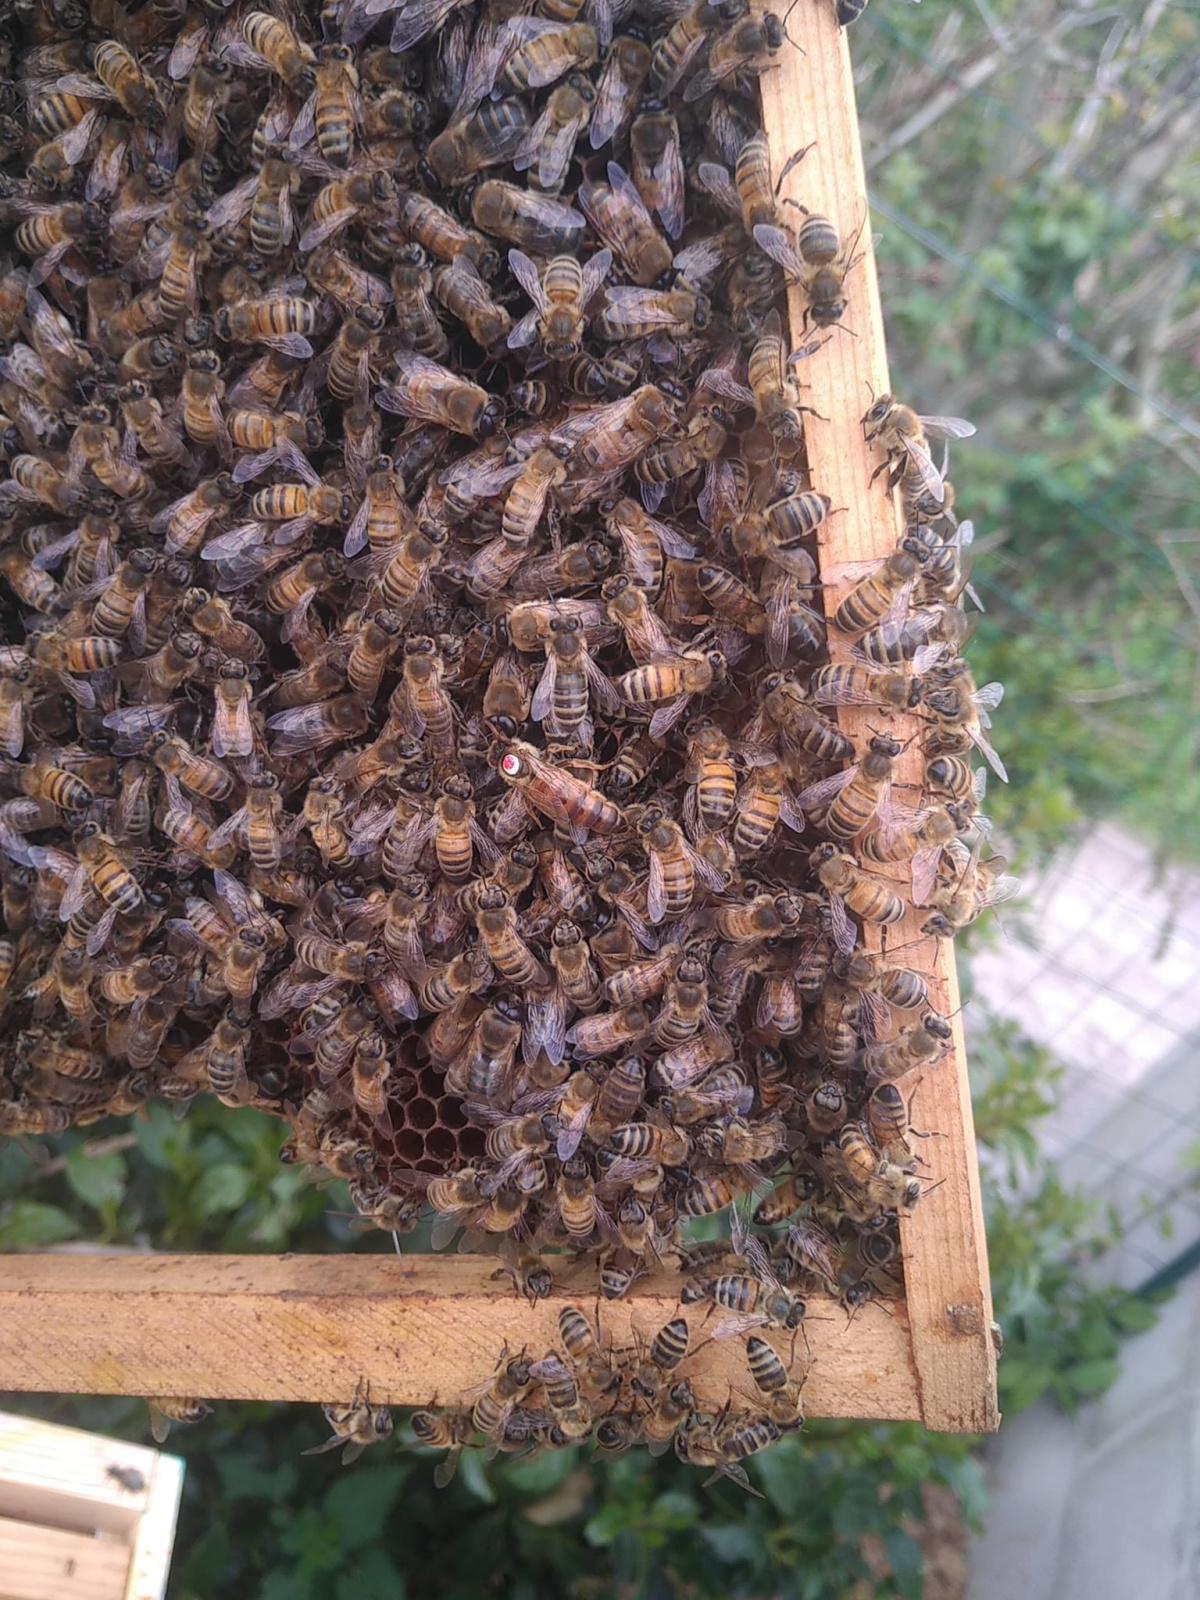 Les ruchers du parc